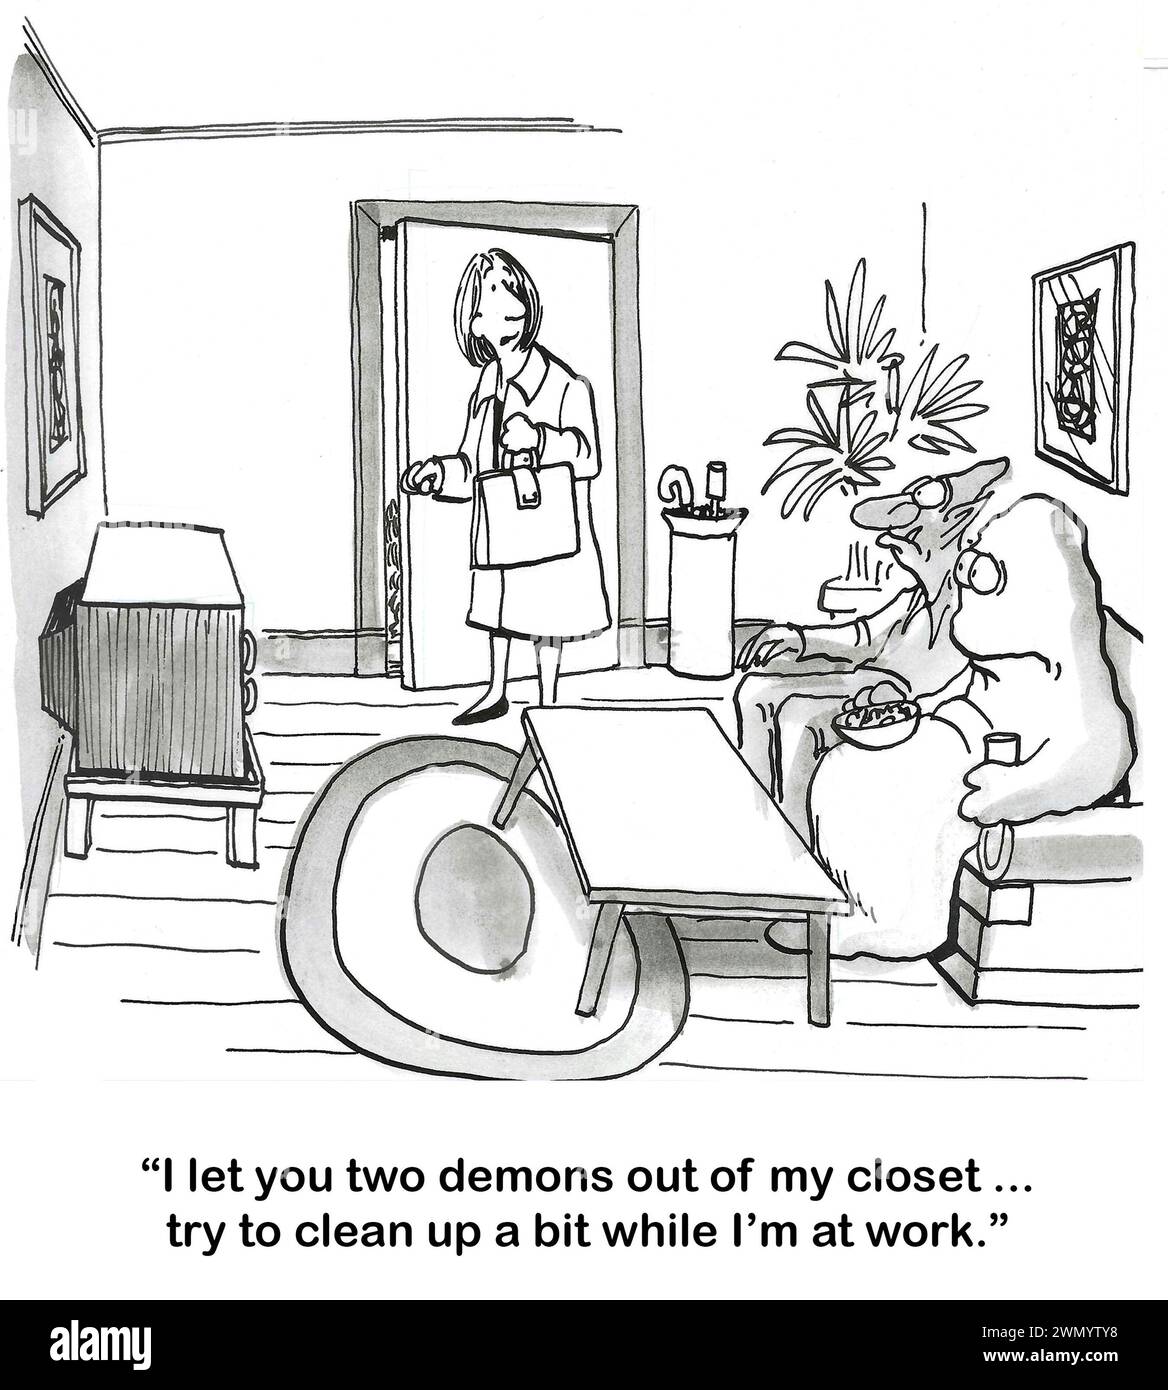 Il cartone animato BW mostra due demoni seduti sul divano. Mentre la donna parte per andare al lavoro, chiede ad entrambi di ripulire un po' la casa. Foto Stock